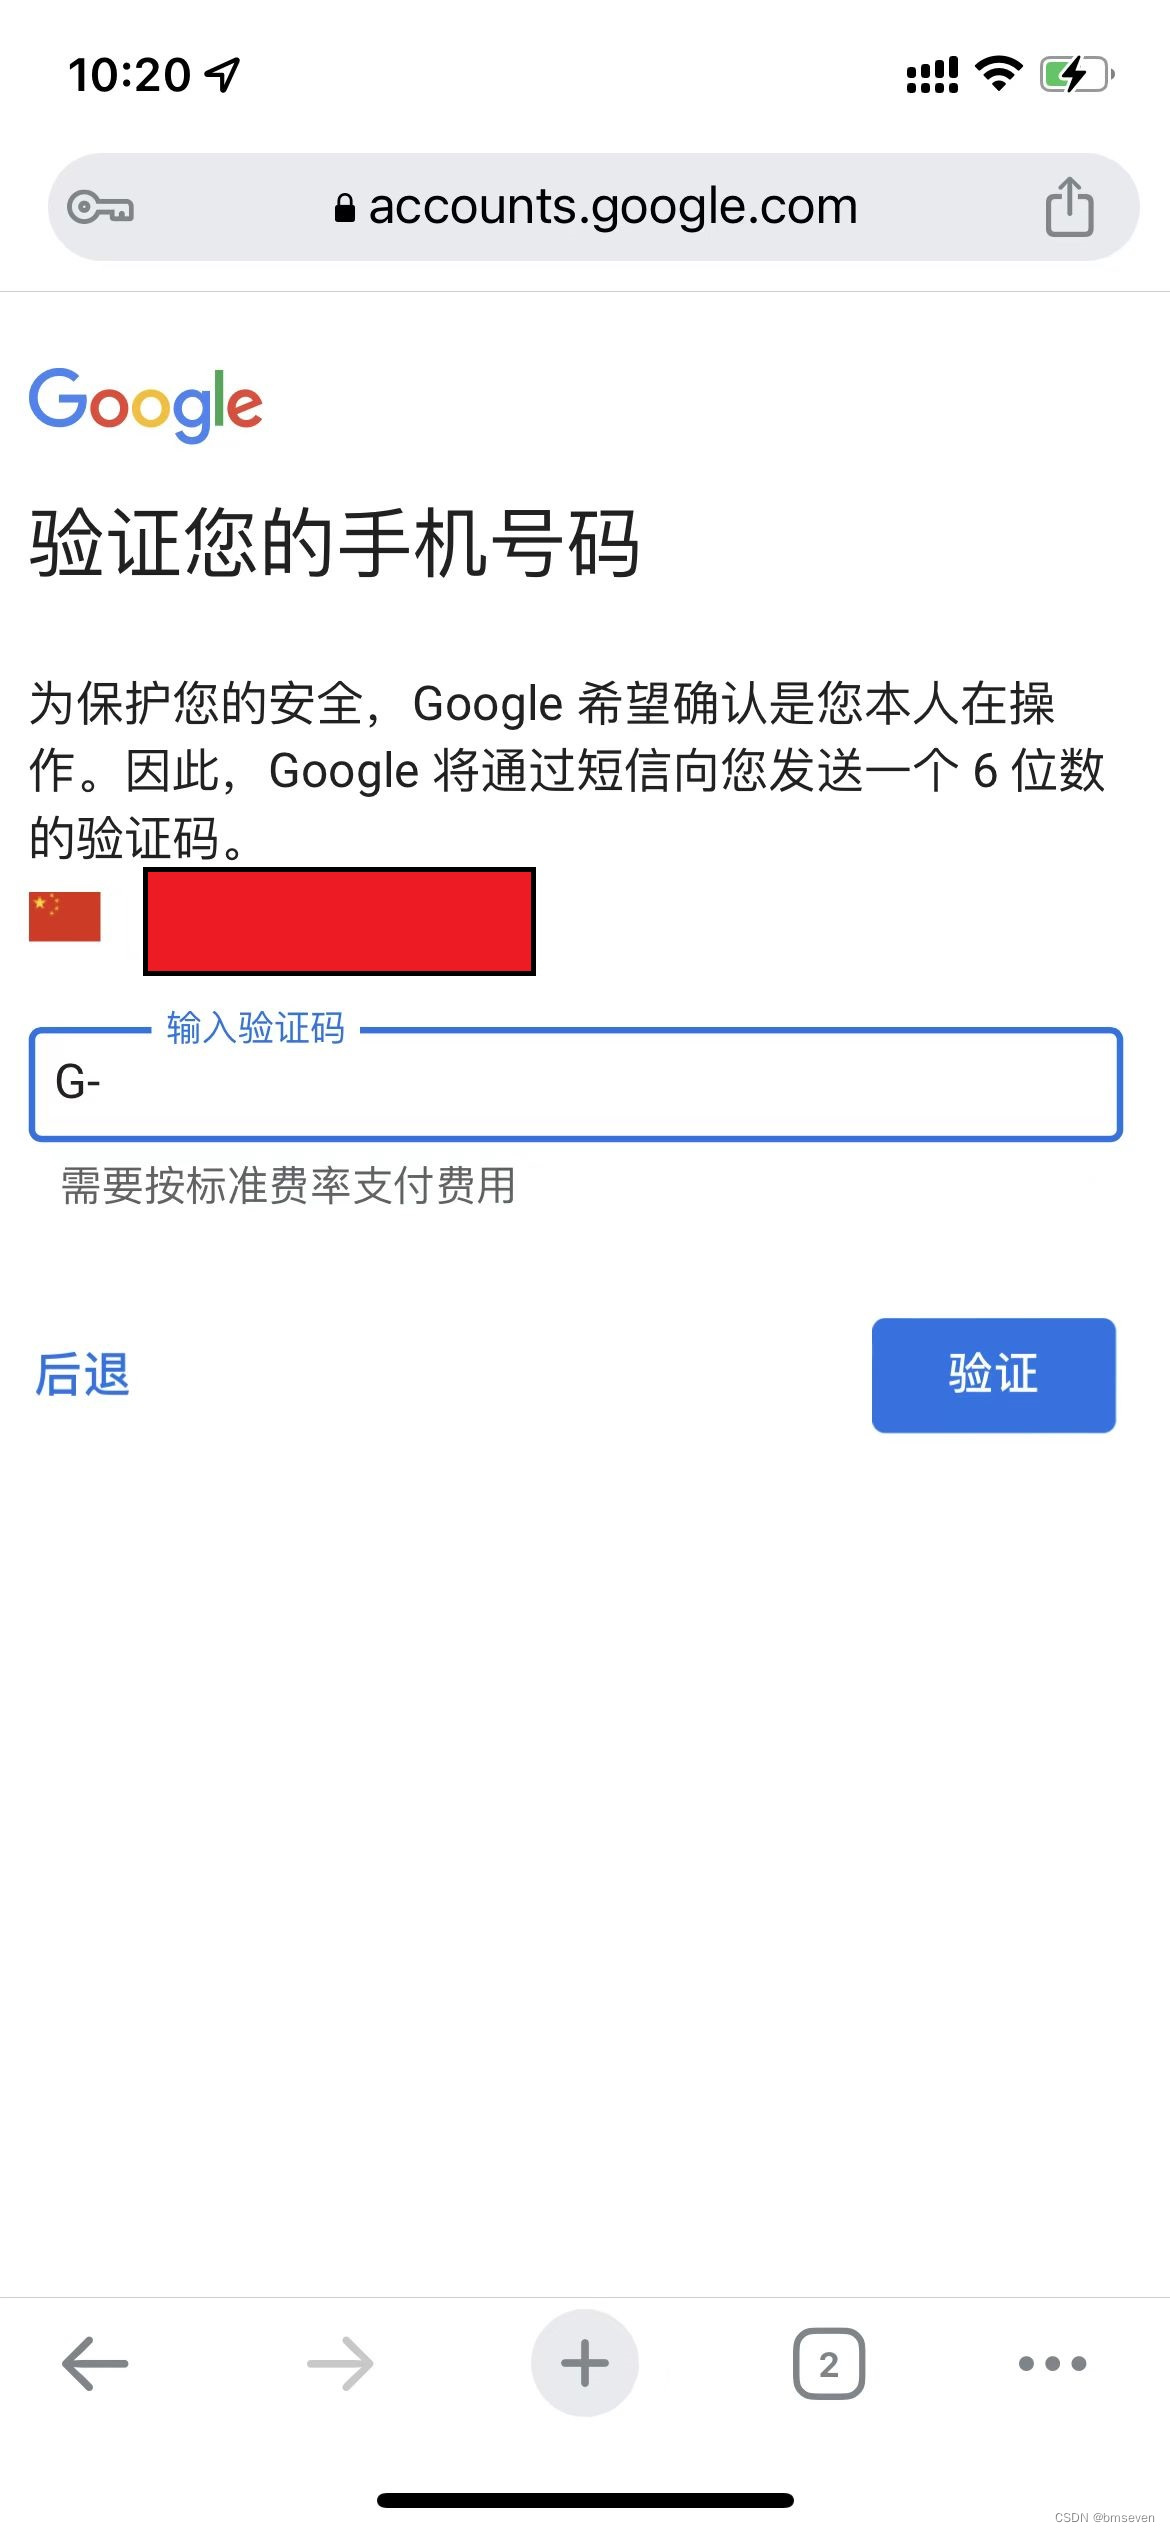 注册ChatGPT时提示Oops! The email you provided is not supported